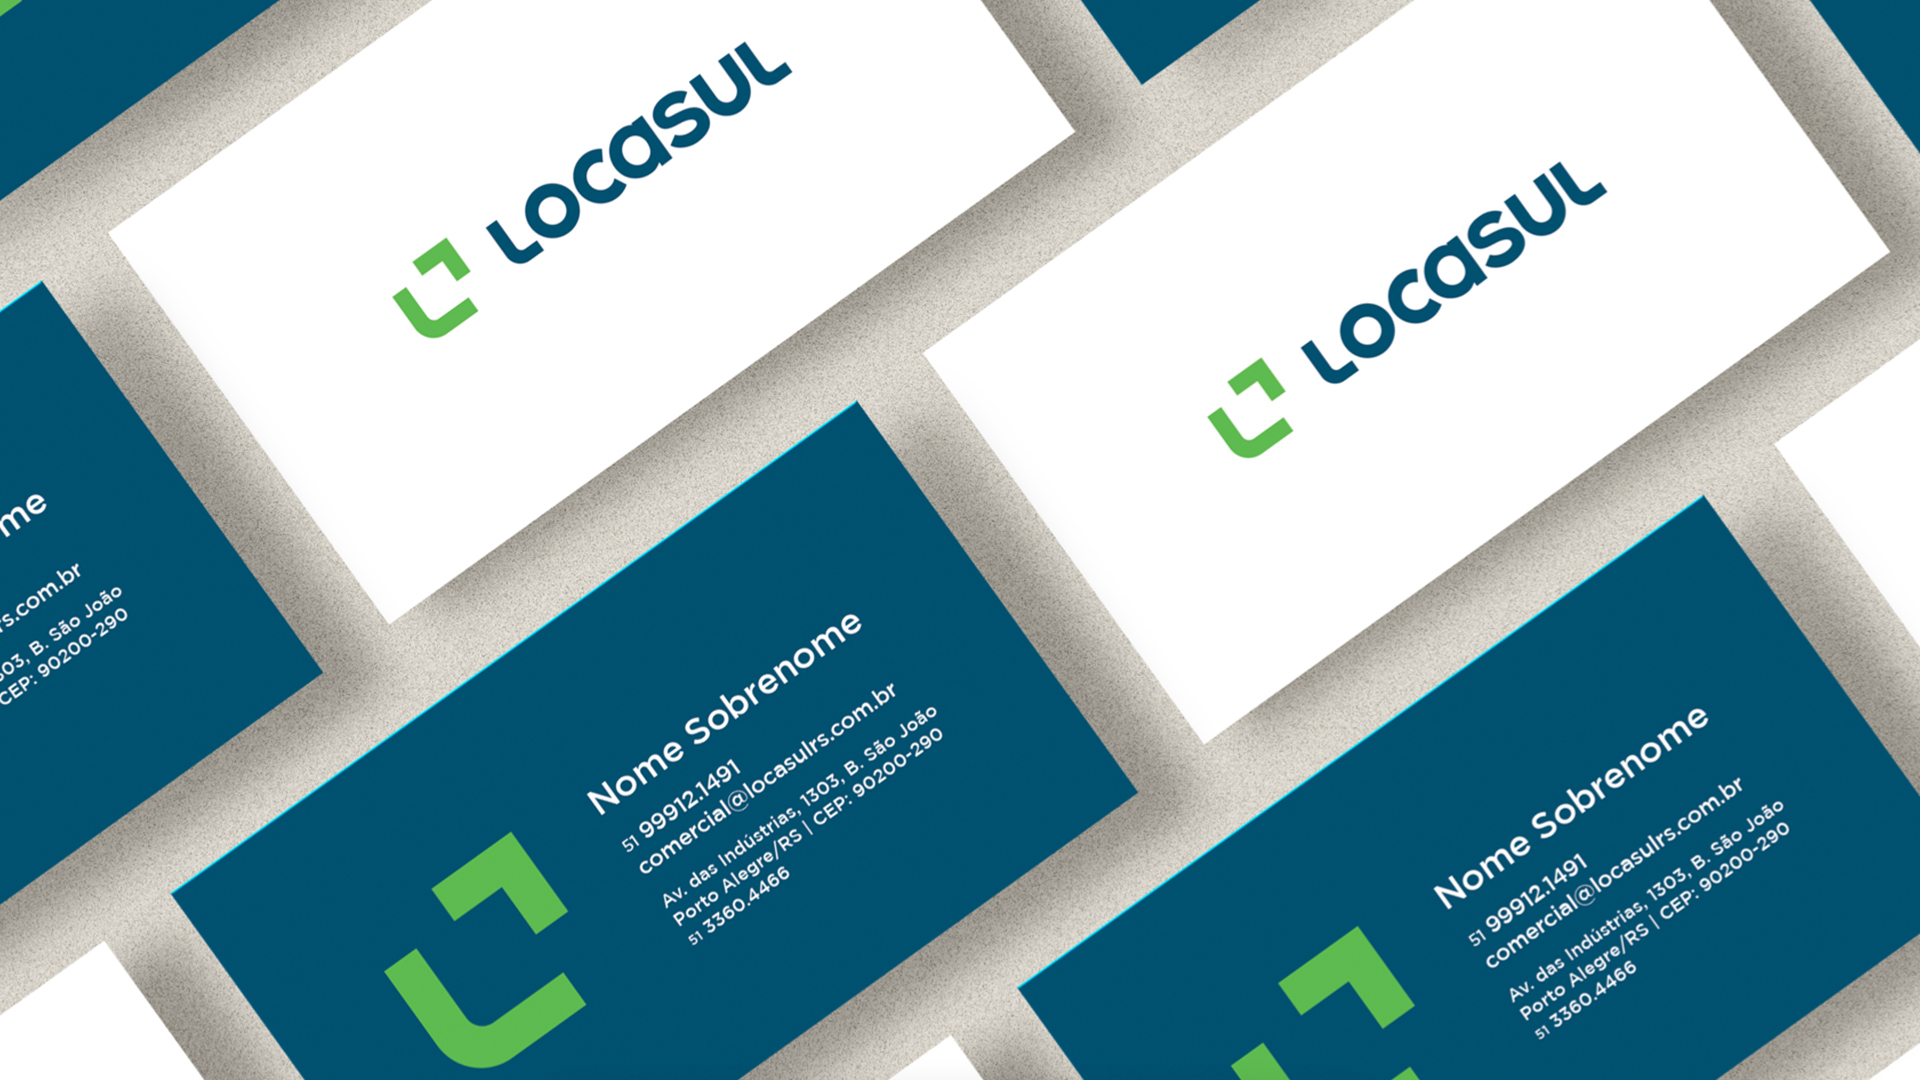 locasul branding card cartao cores padrao marca novo layout design linguagem visual publicidade marketing encantado porto alegre locadora sul pais brasil